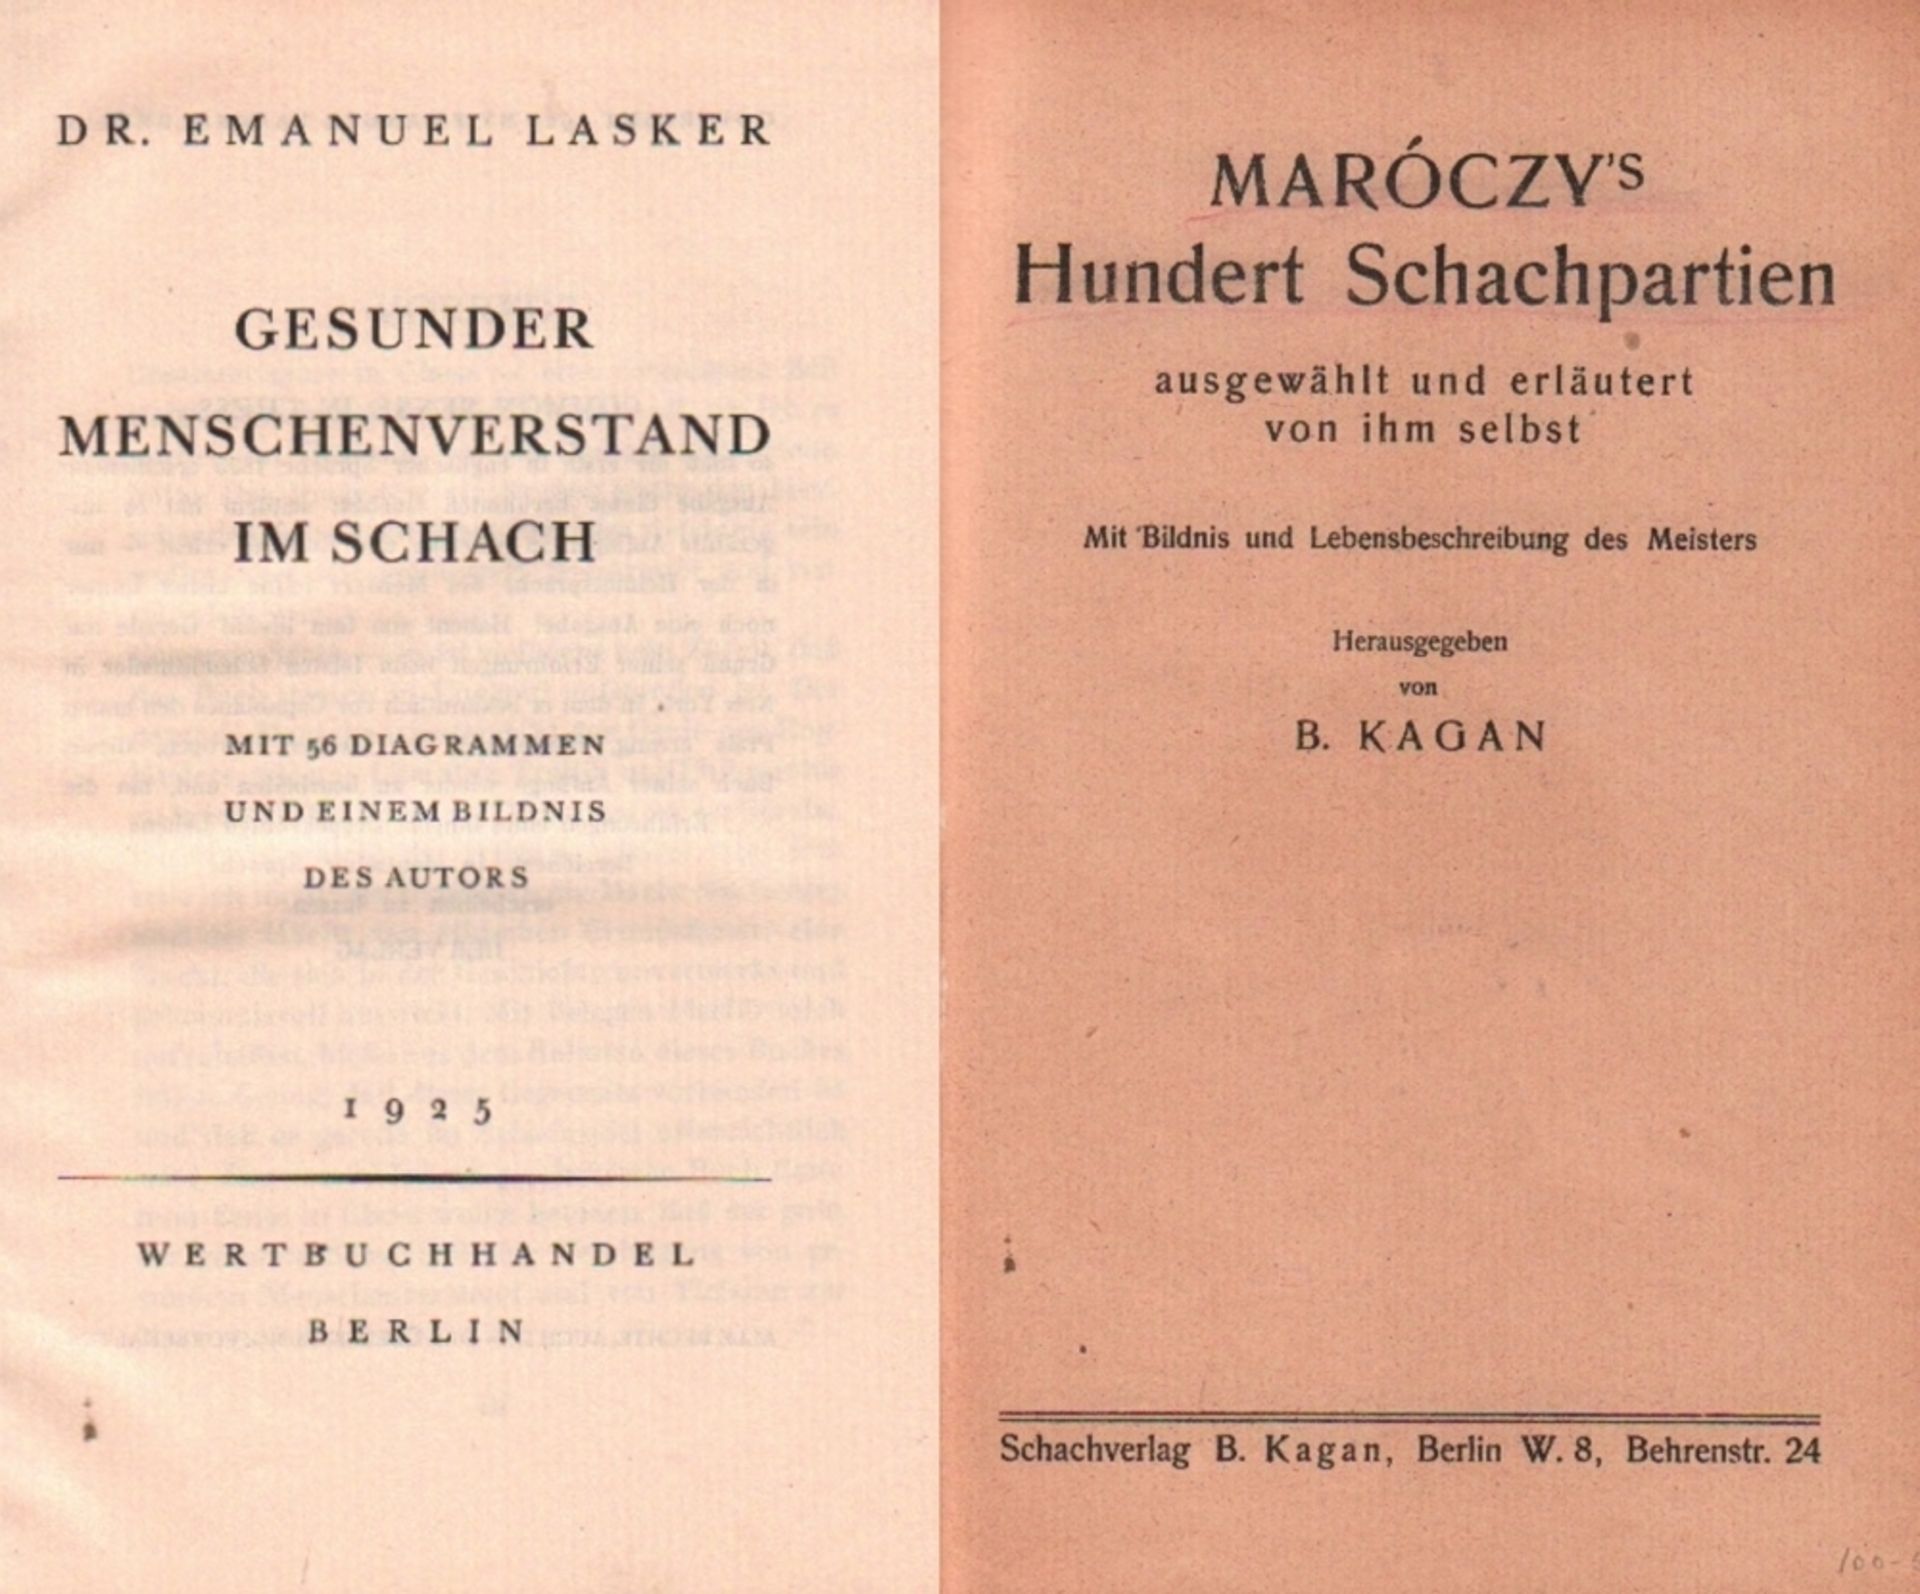 Lasker, Emanuel. Gesunder Menschenverstand im Schach. Berlin, Wertbuchhandel, 1925. 8°. Mit 1